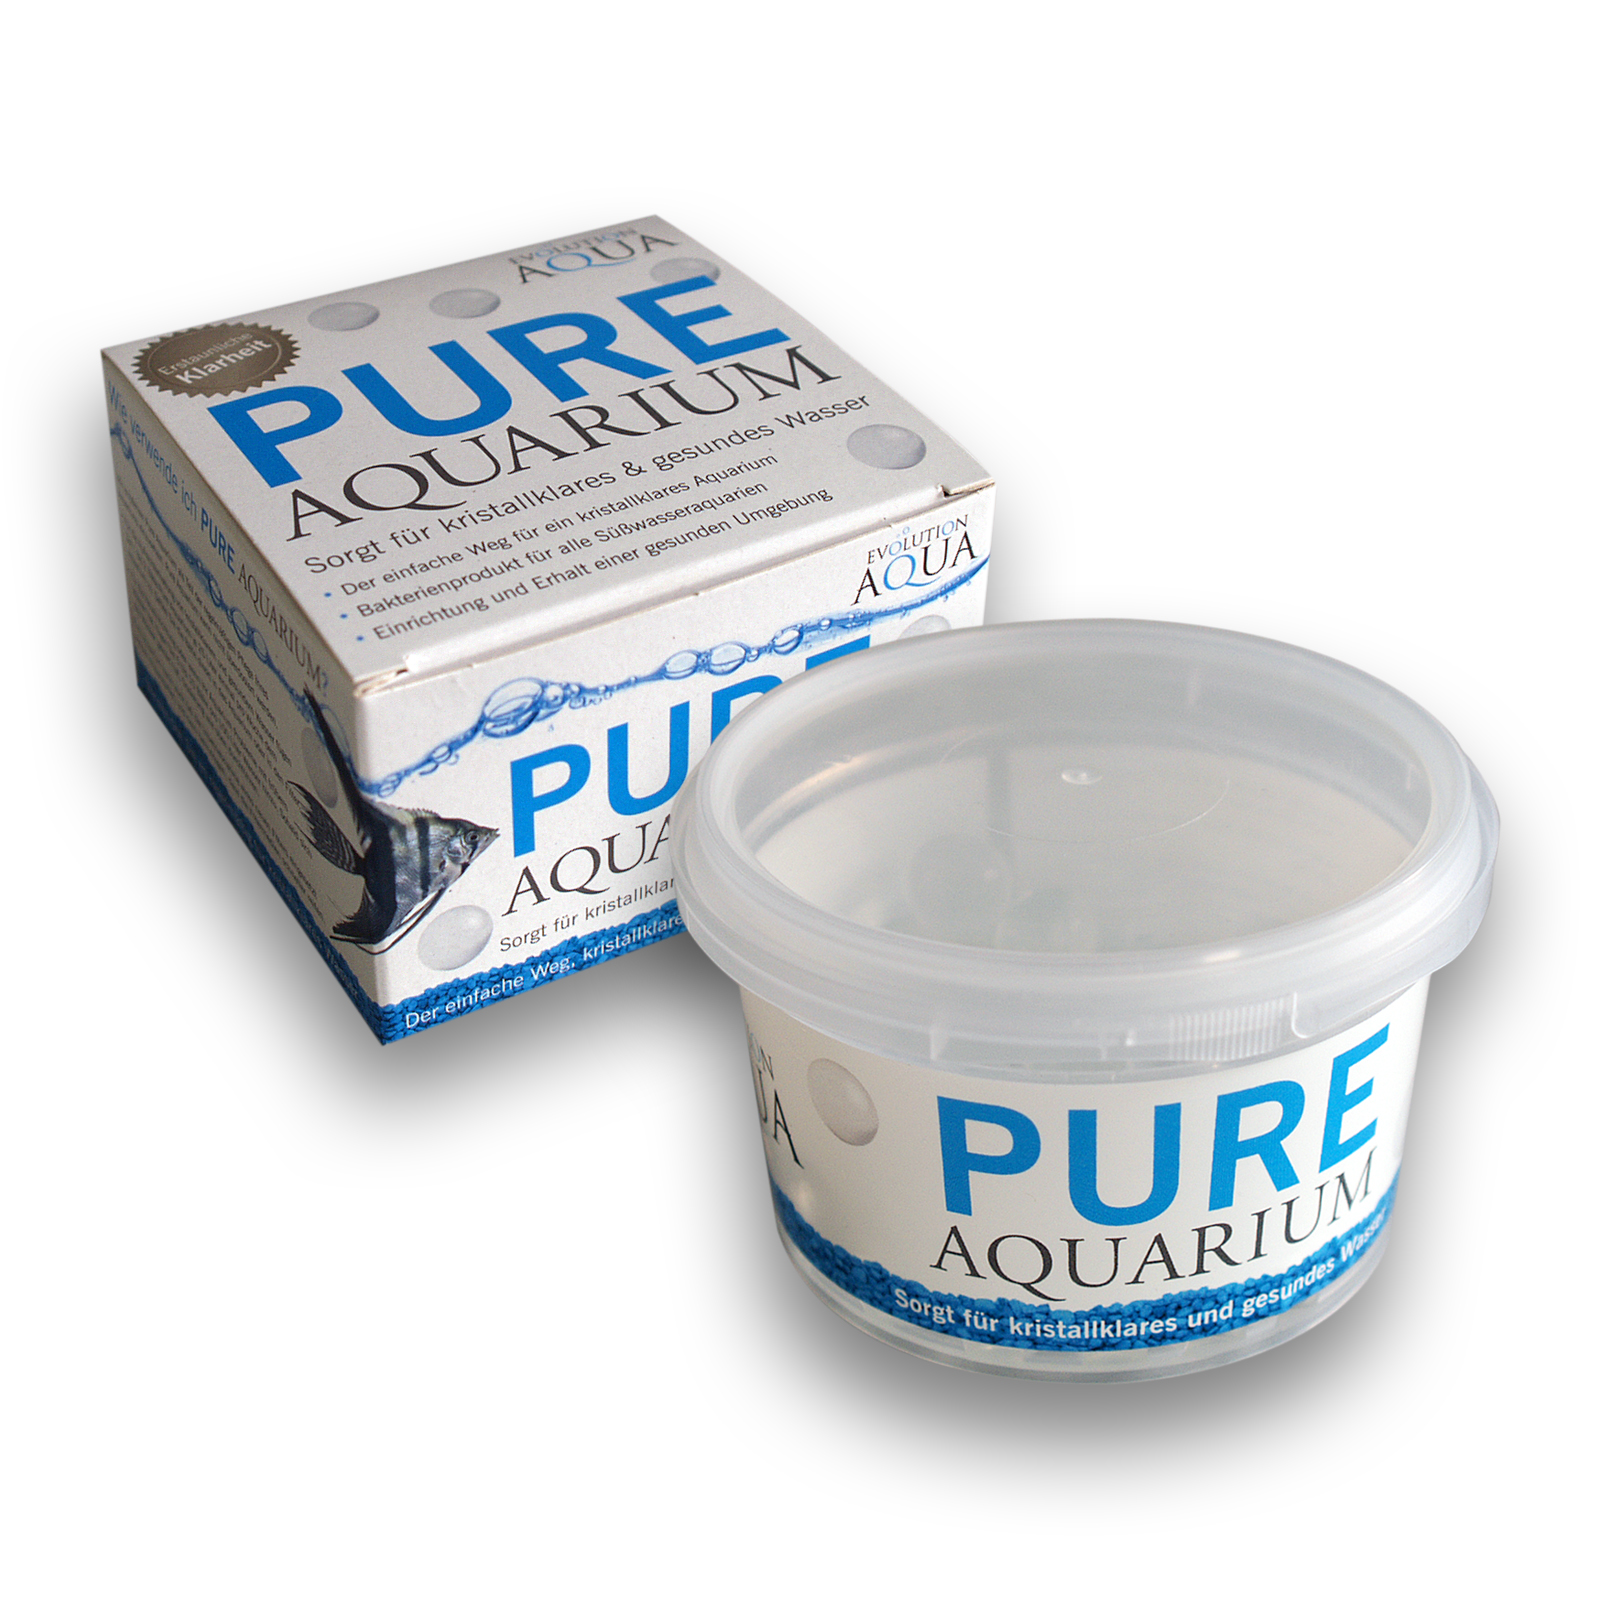 Evolution Aqua Pure Aquarium 50 Bälle für bis zu 500L Becken